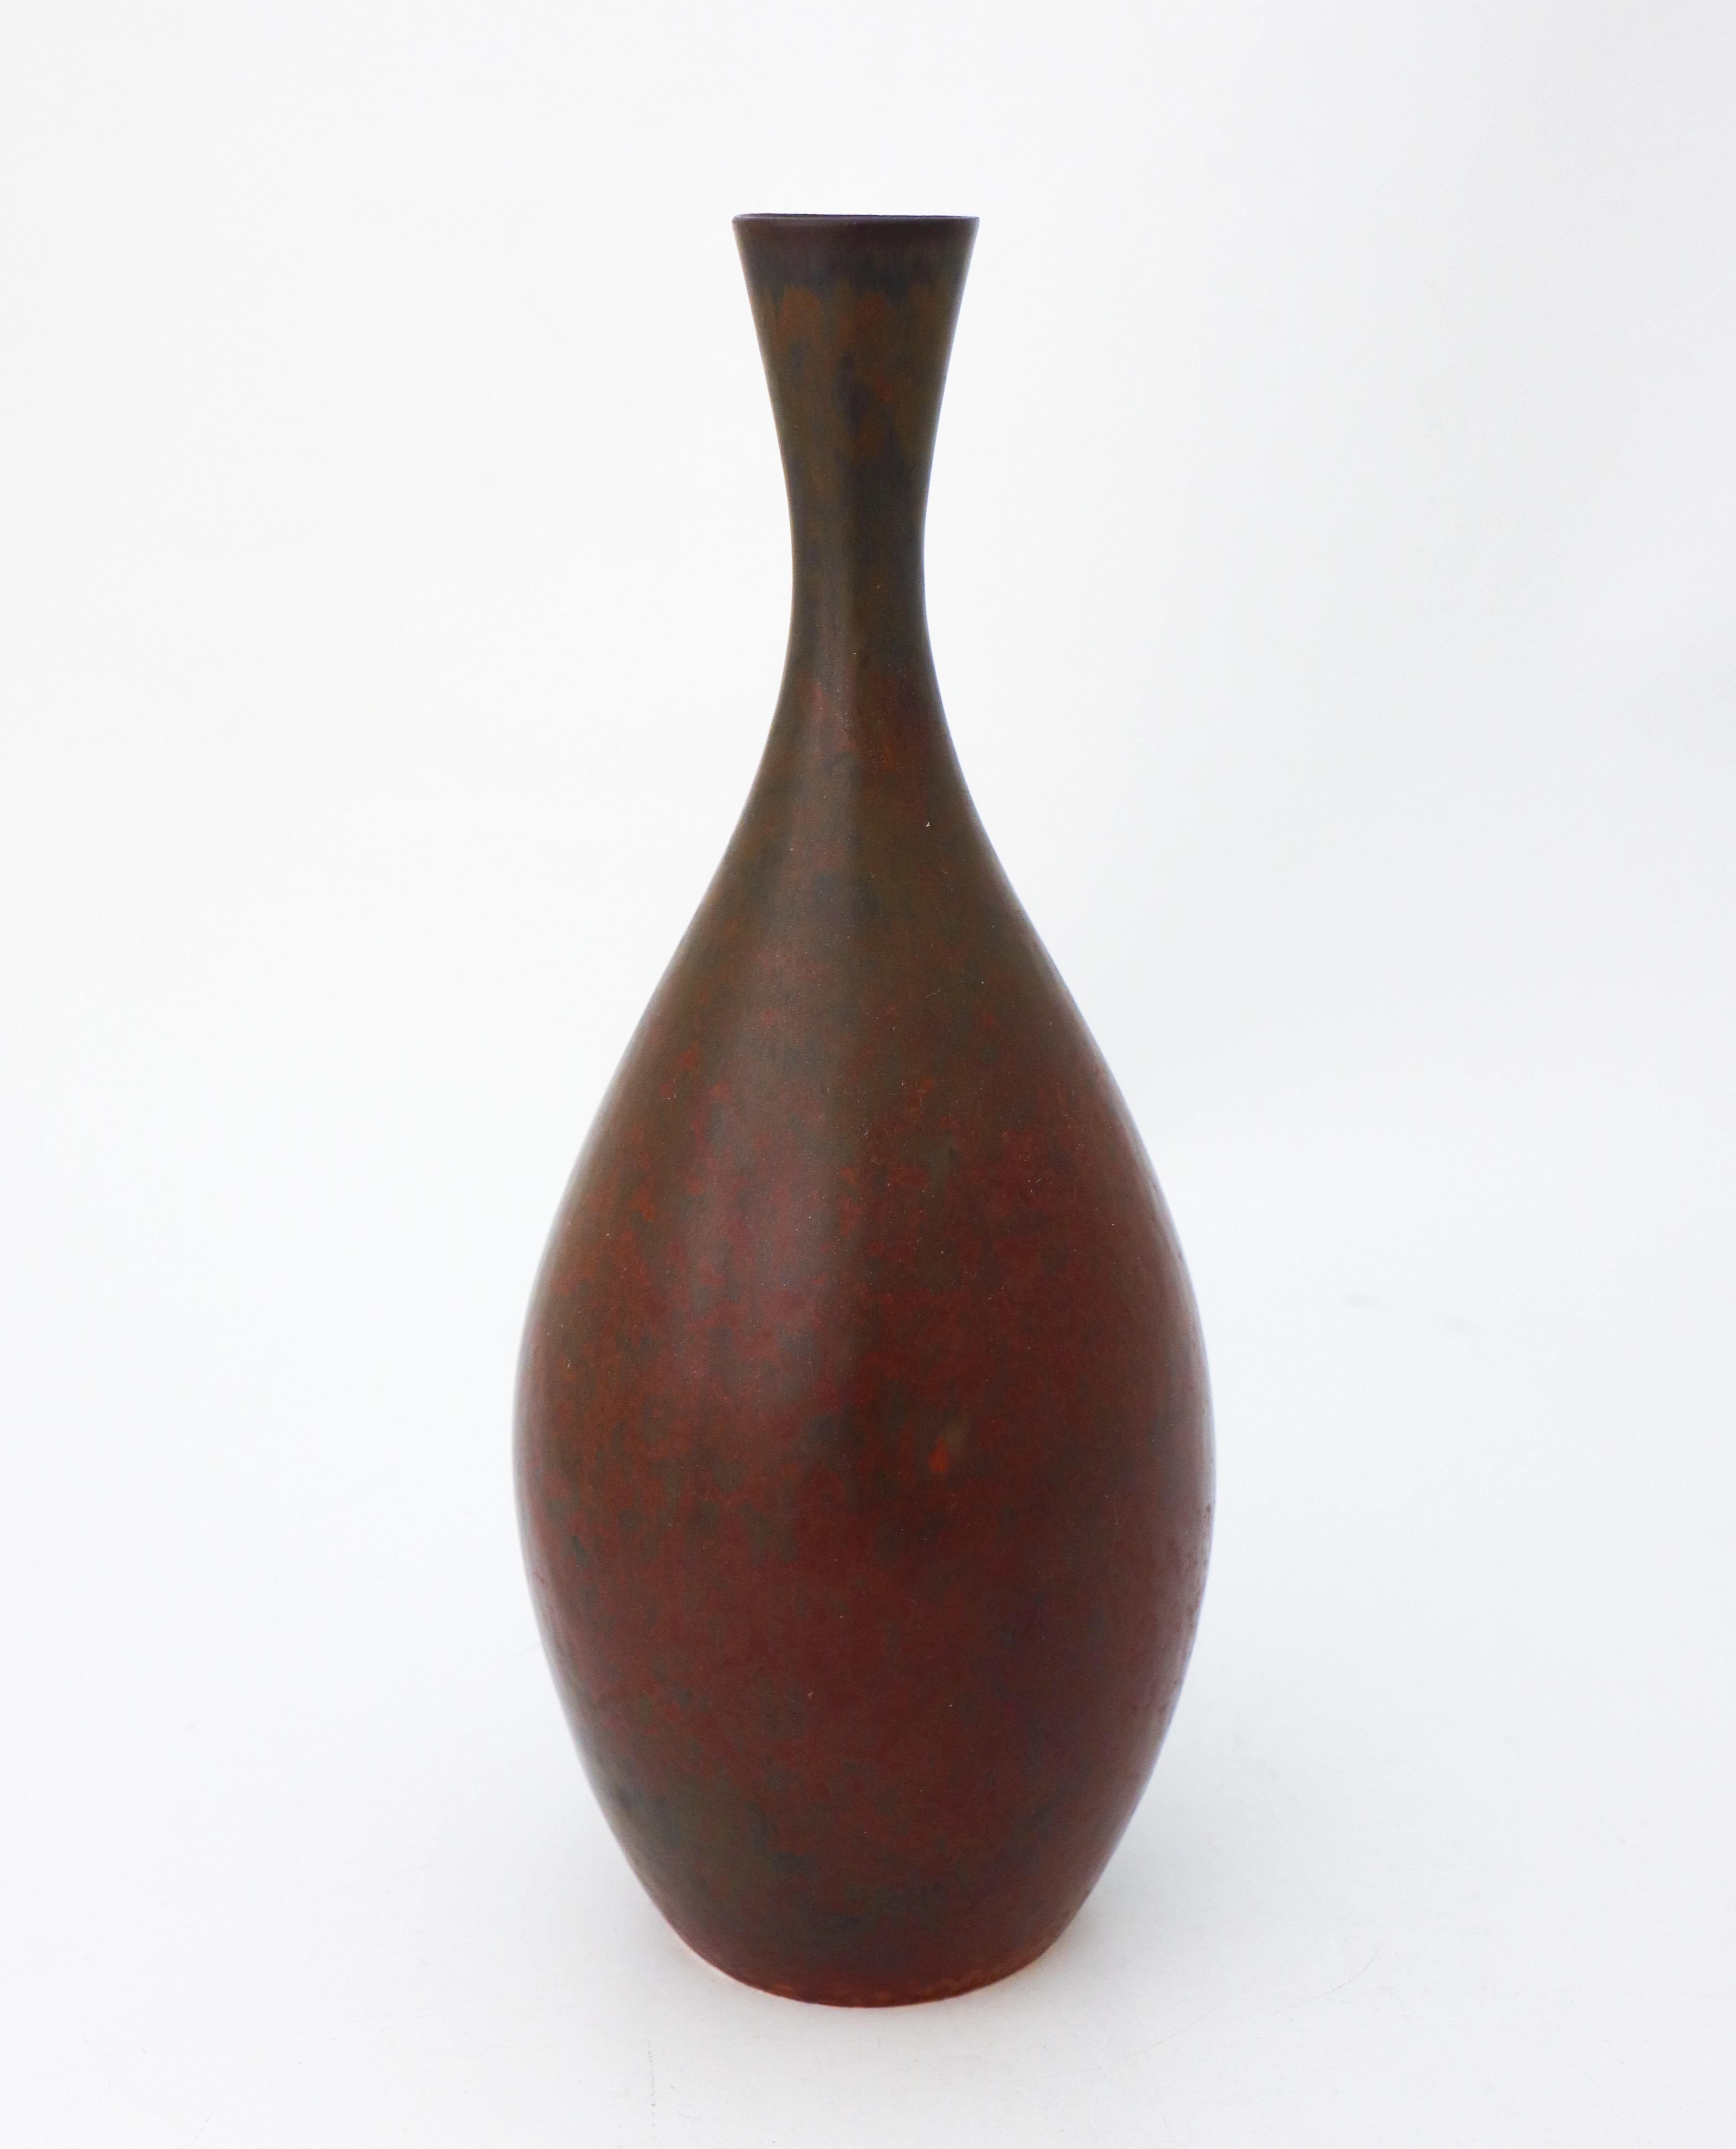 Scandinavian Modern Lovely Brown Ceramic Vase - Carl-Harry Stålhane - Rörstrand - Mid 20th Century For Sale